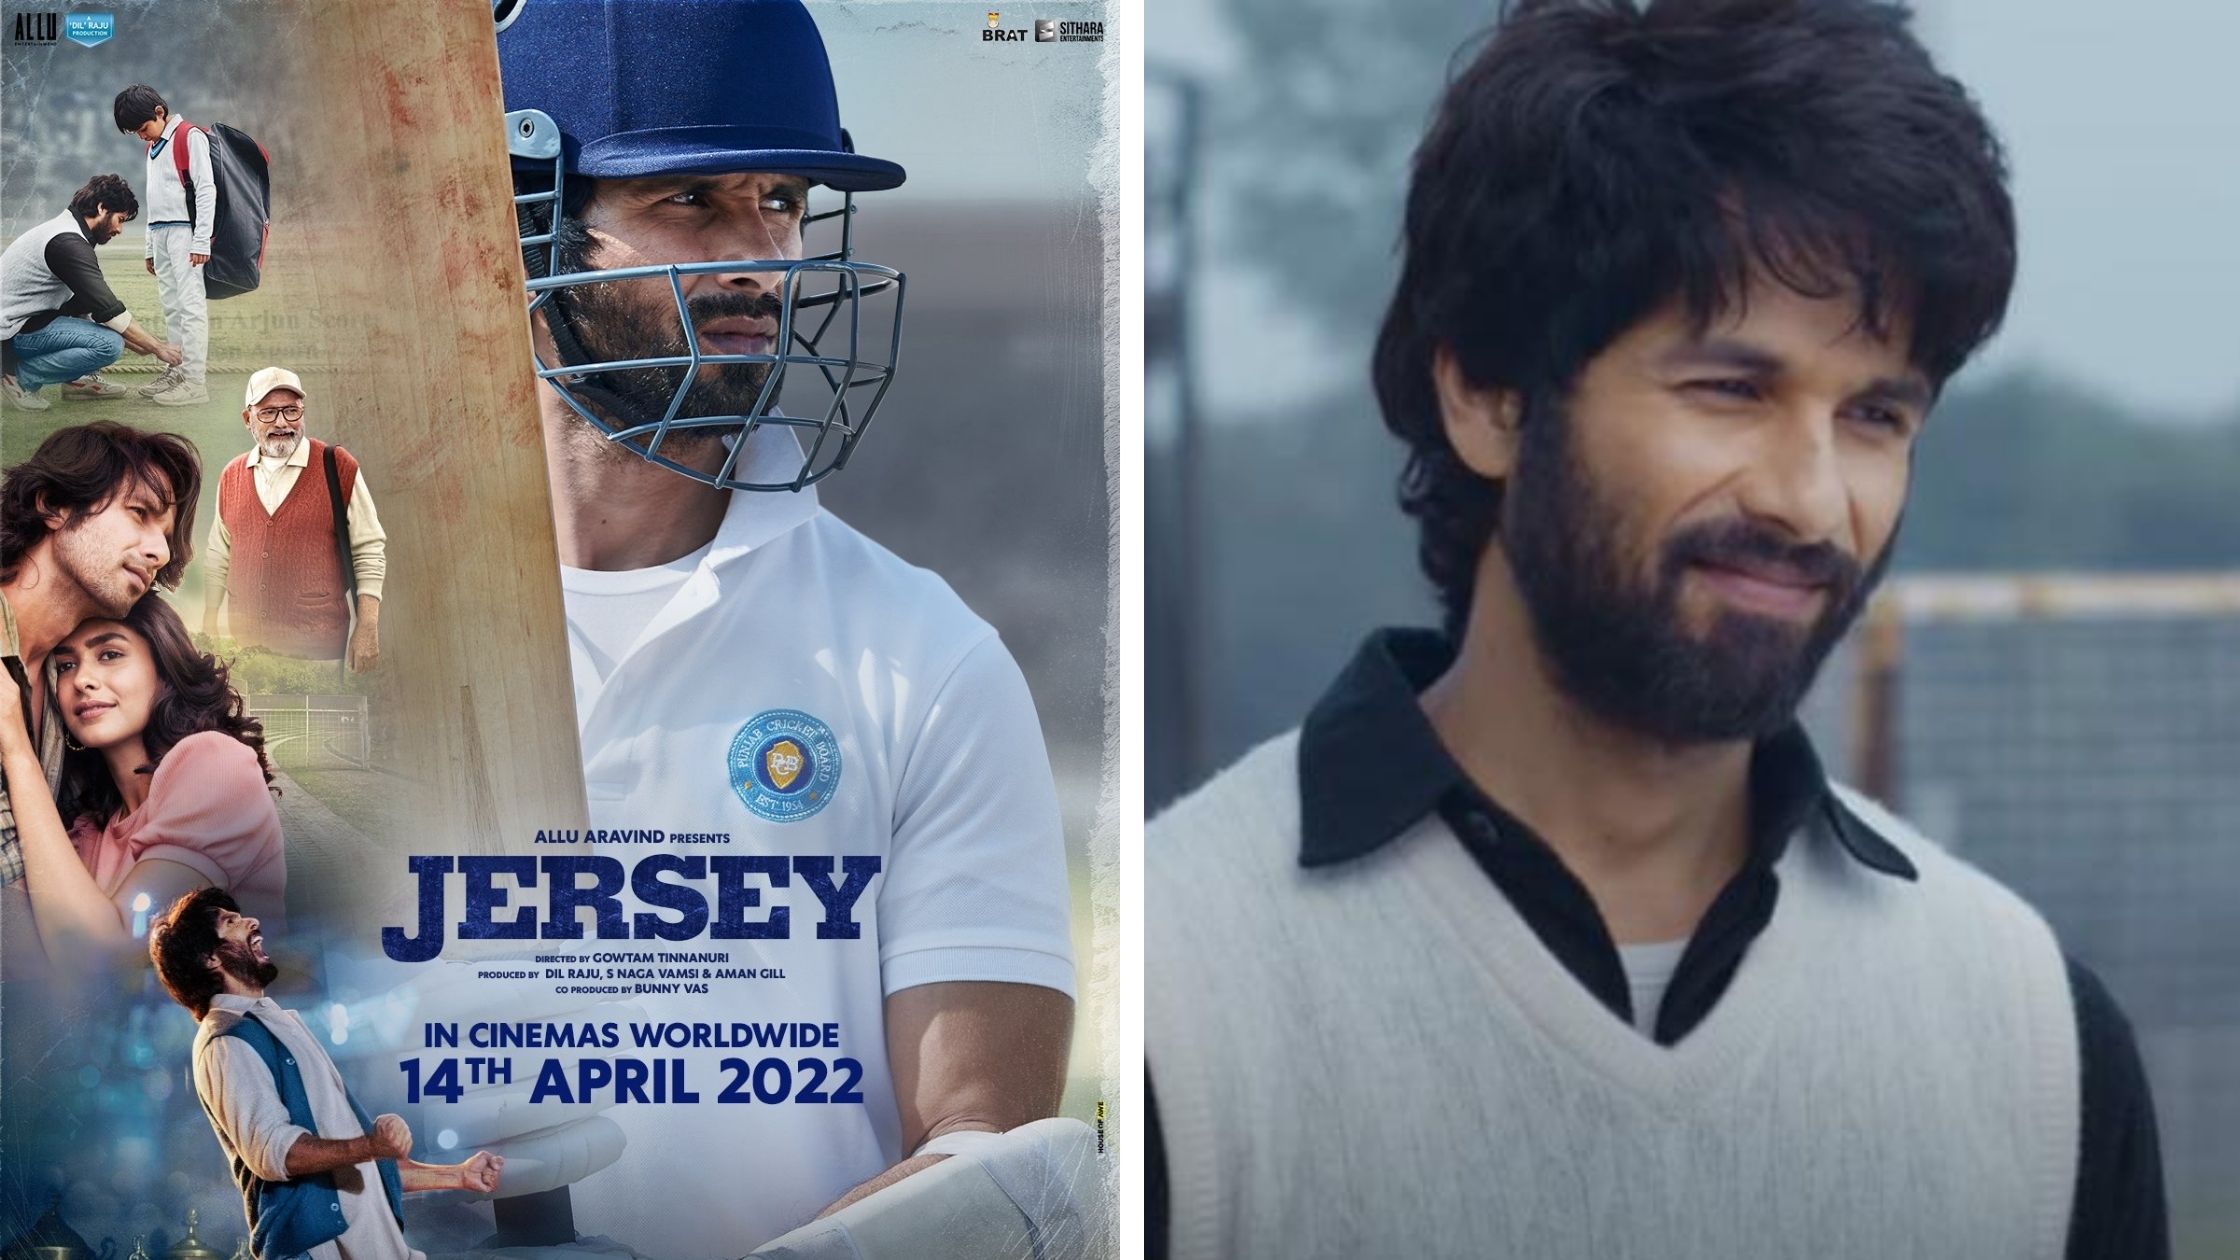 belangrijk Gedeeltelijk Extreme armoede Shahid Kapoor Unveils New Official Trailer for Sports Drama 'Jersey' -  BritAsia TV